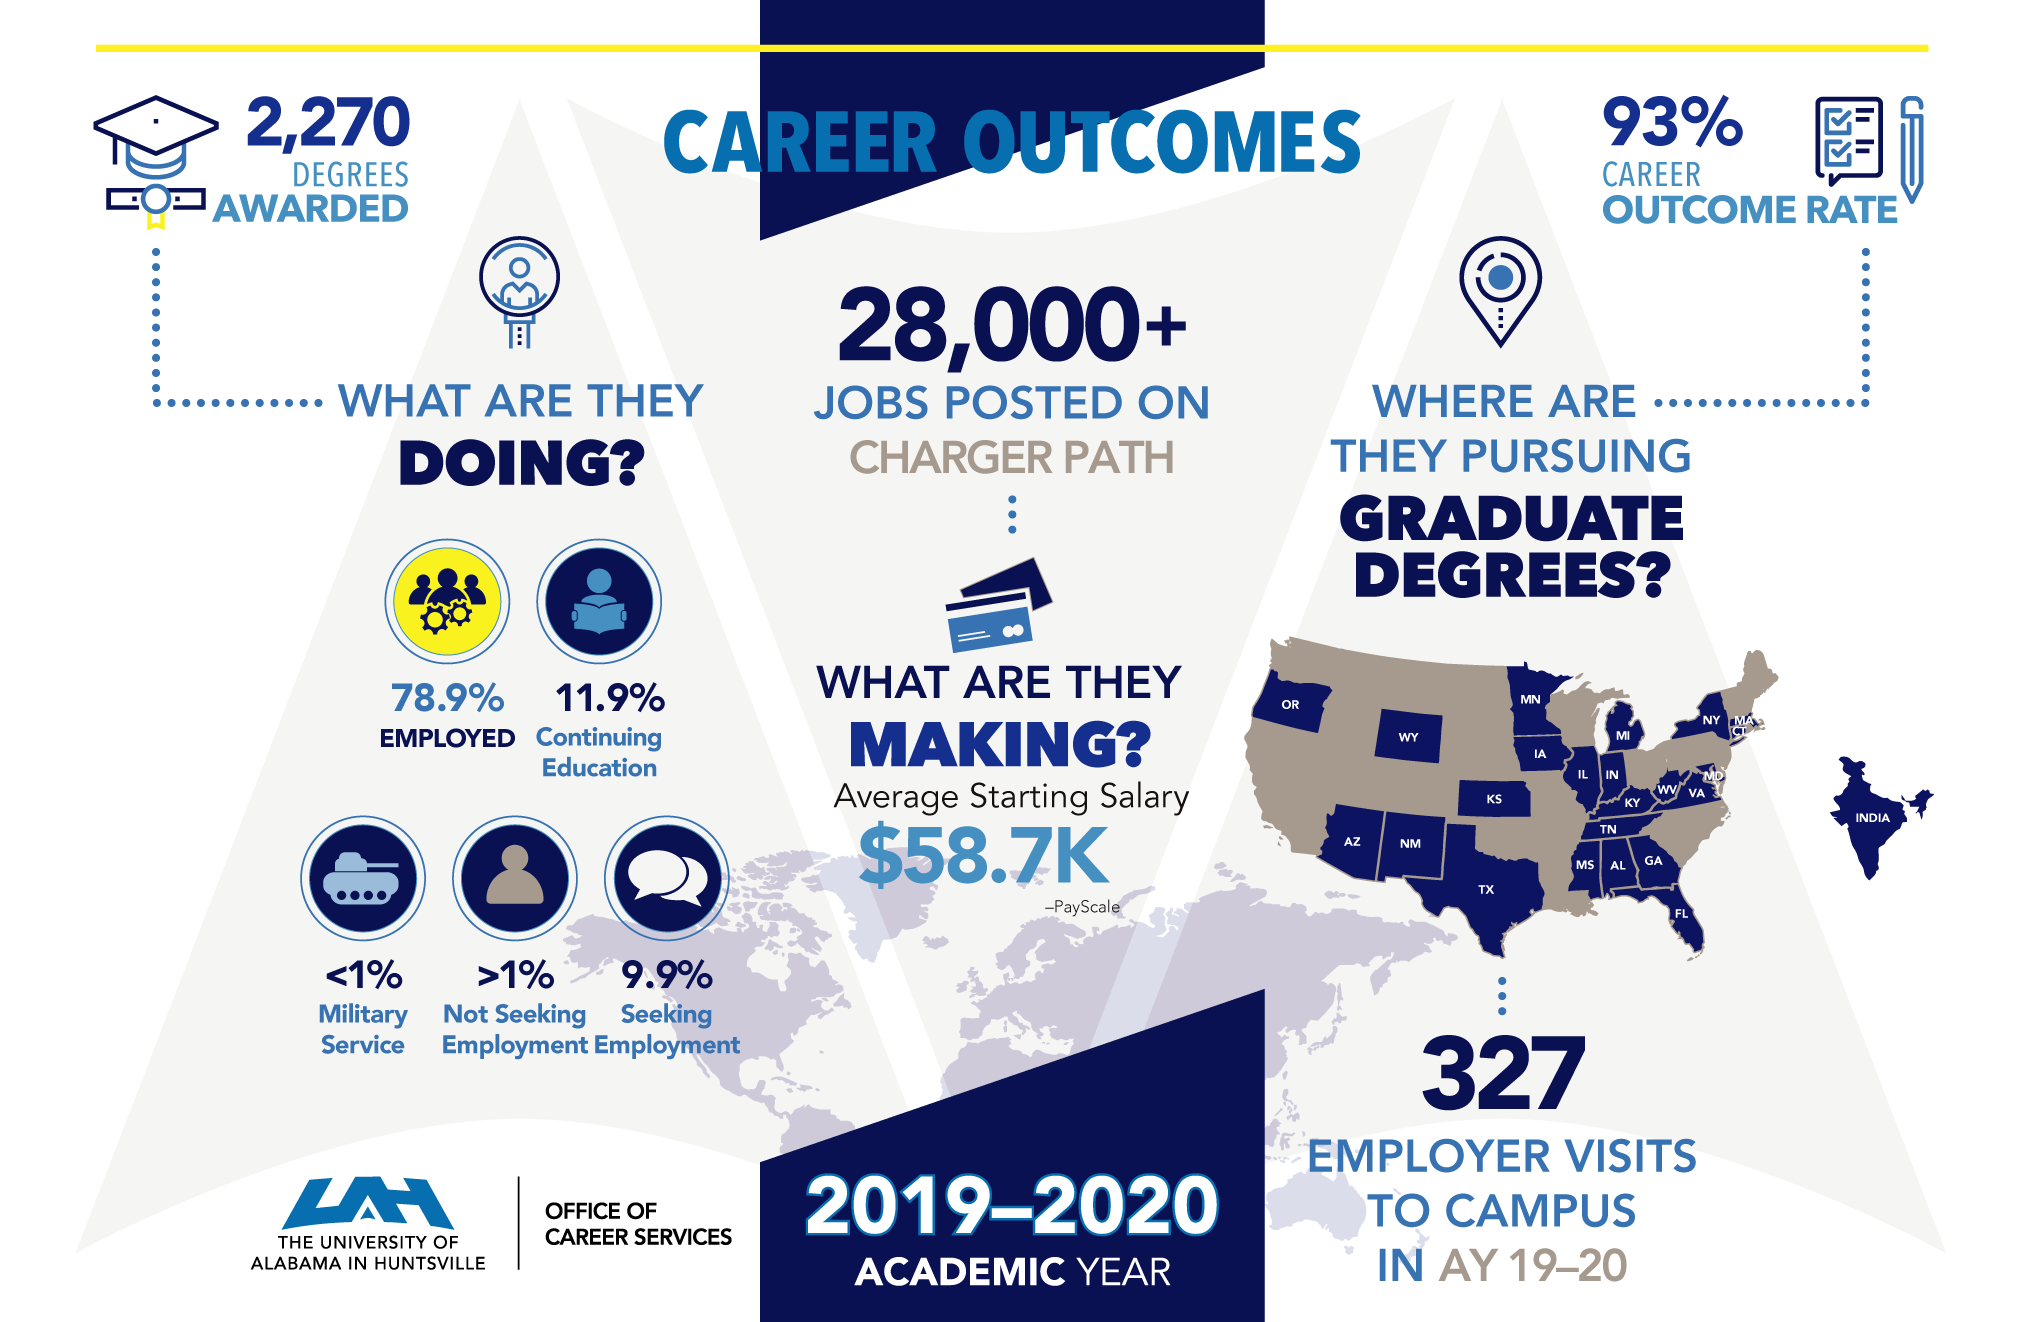 cs career outcomes infographic 040621v1 digital